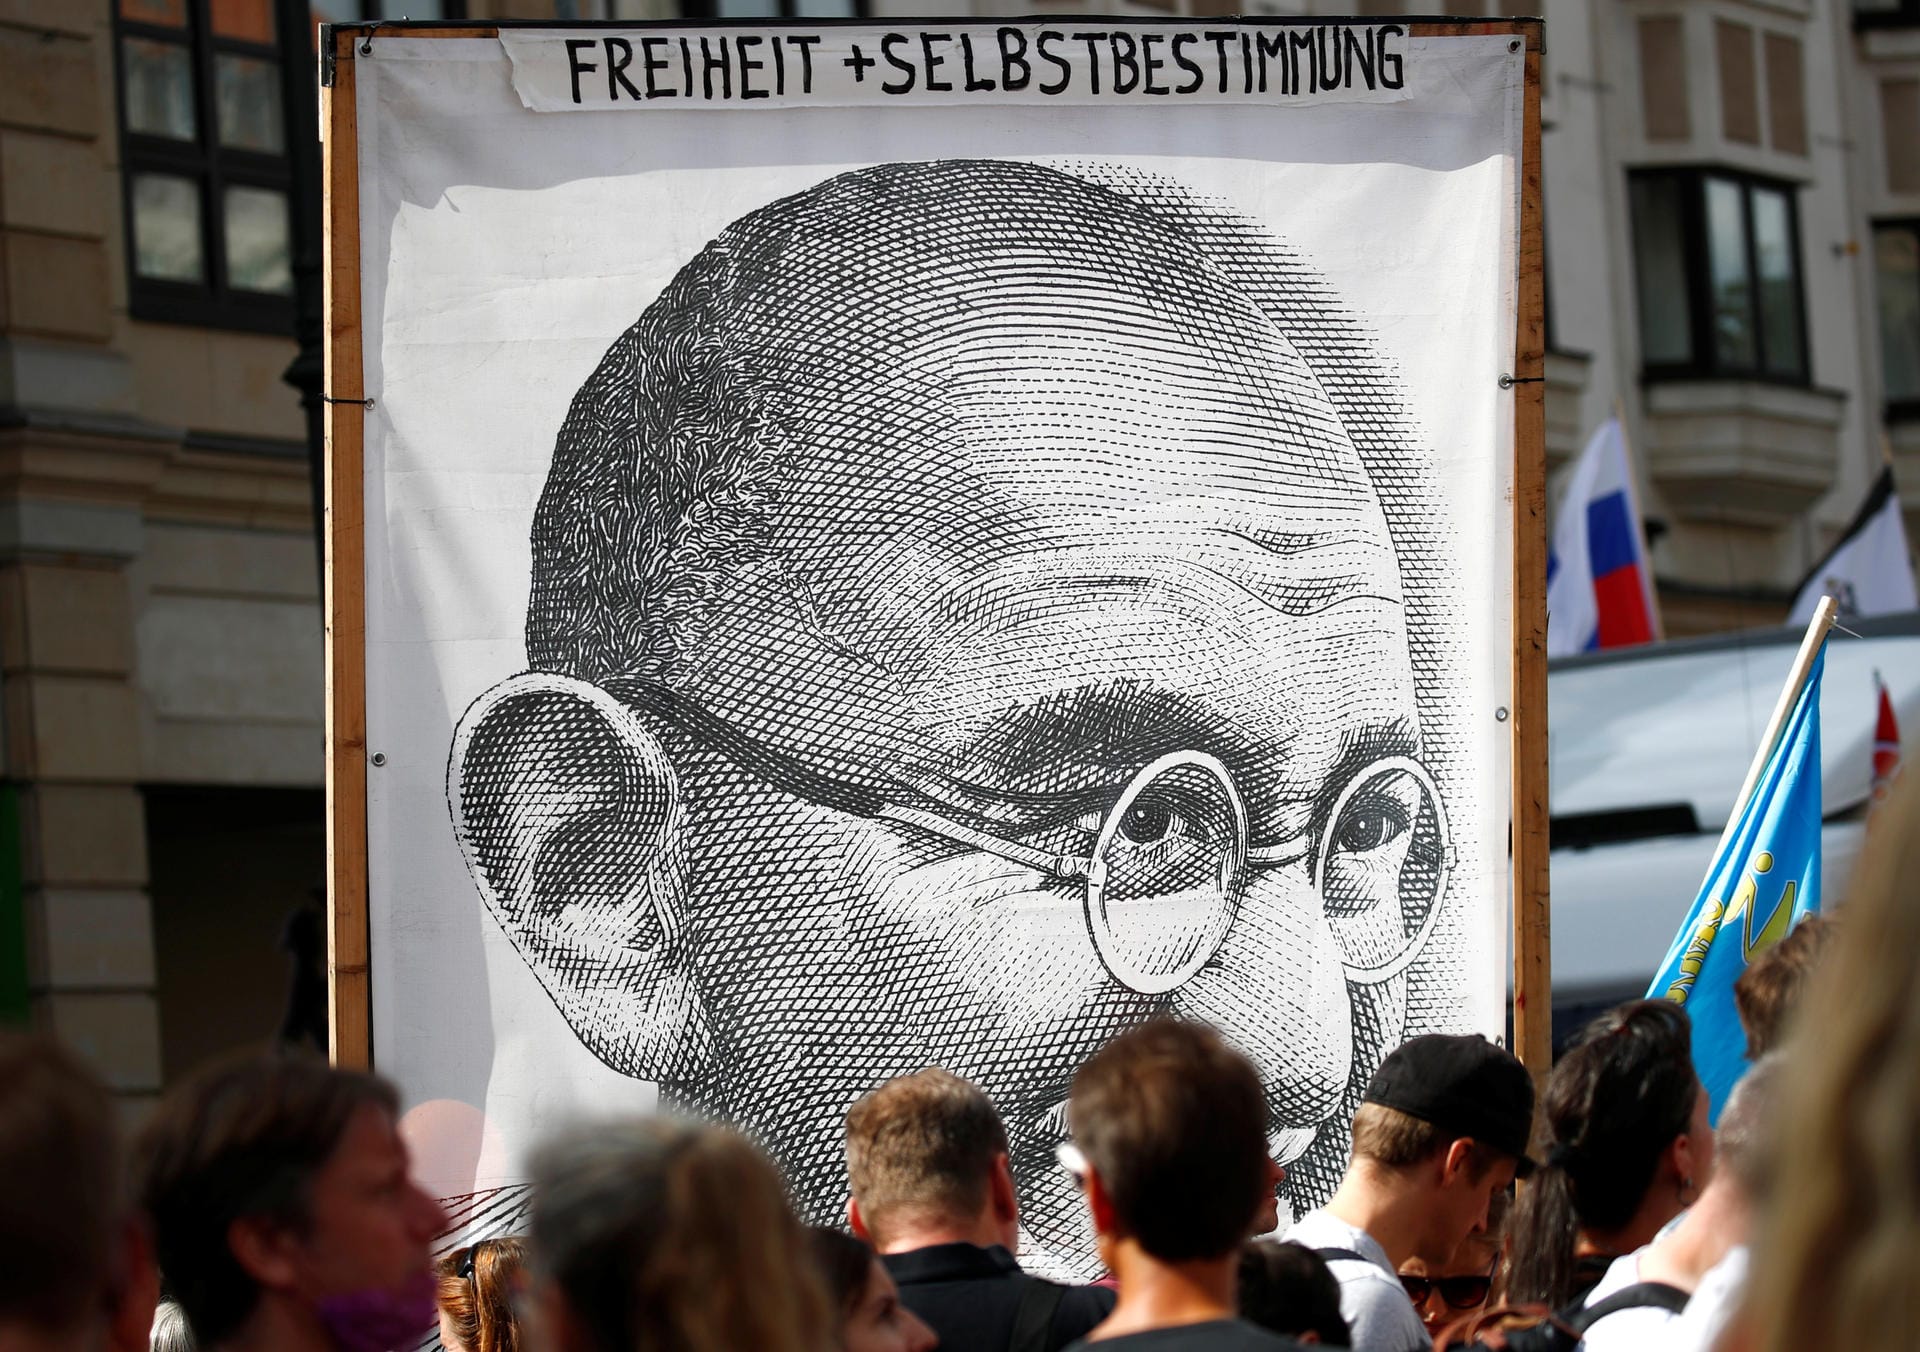 Demonstranten halten ein Porträt von Mahatma Gandhi hoch mit den Worten "Freiheit + Selbstbestimmung".